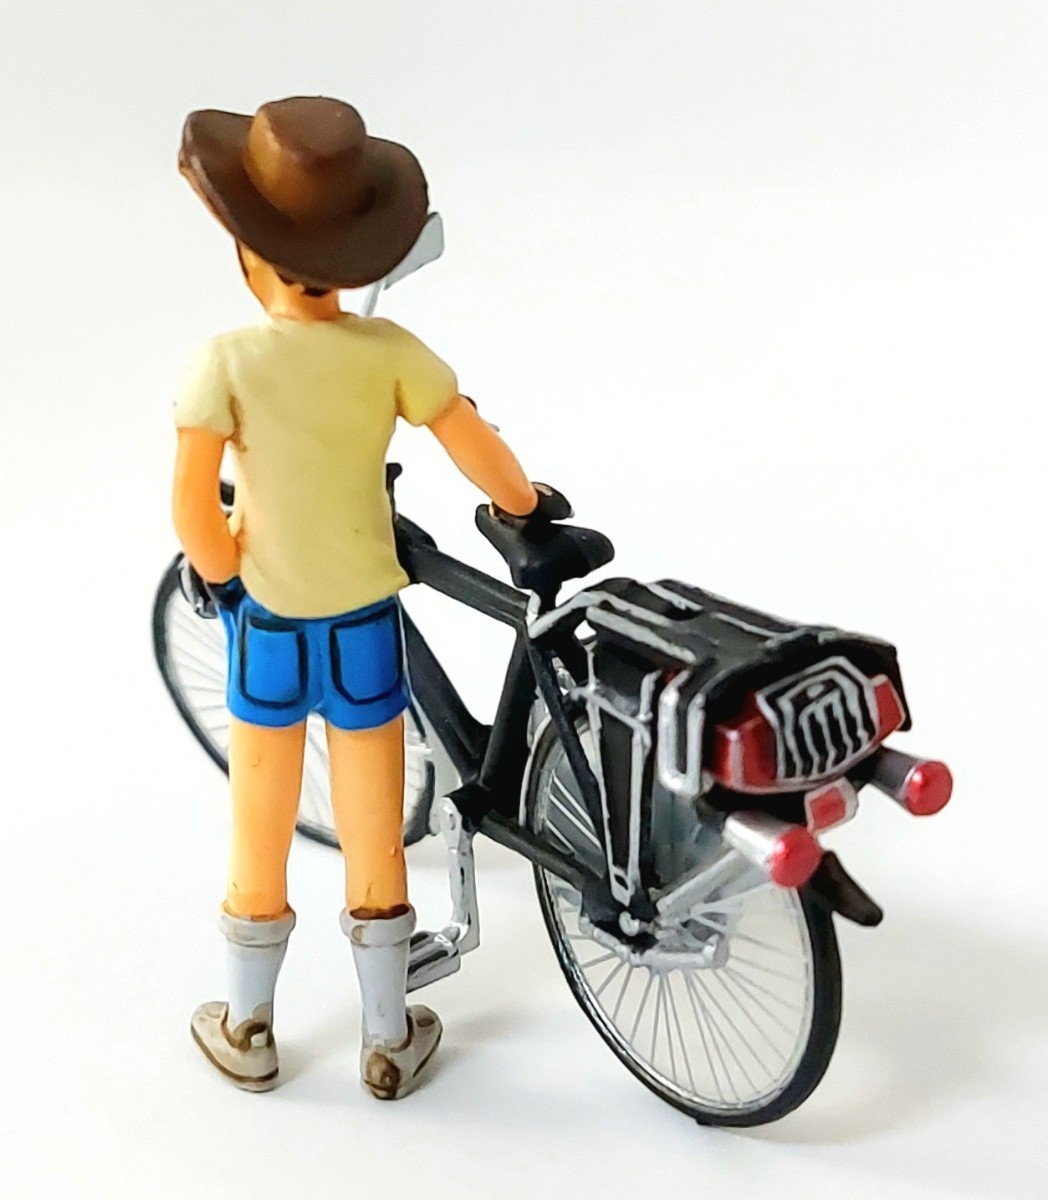 ☆昭和少年の憧れ! スーパーカー自転車を精密立体化!「ナショナル自転車エレクトロボーイZ + あの日の少年」彩色済 完成品 模型 フィギュア_画像は見本です。